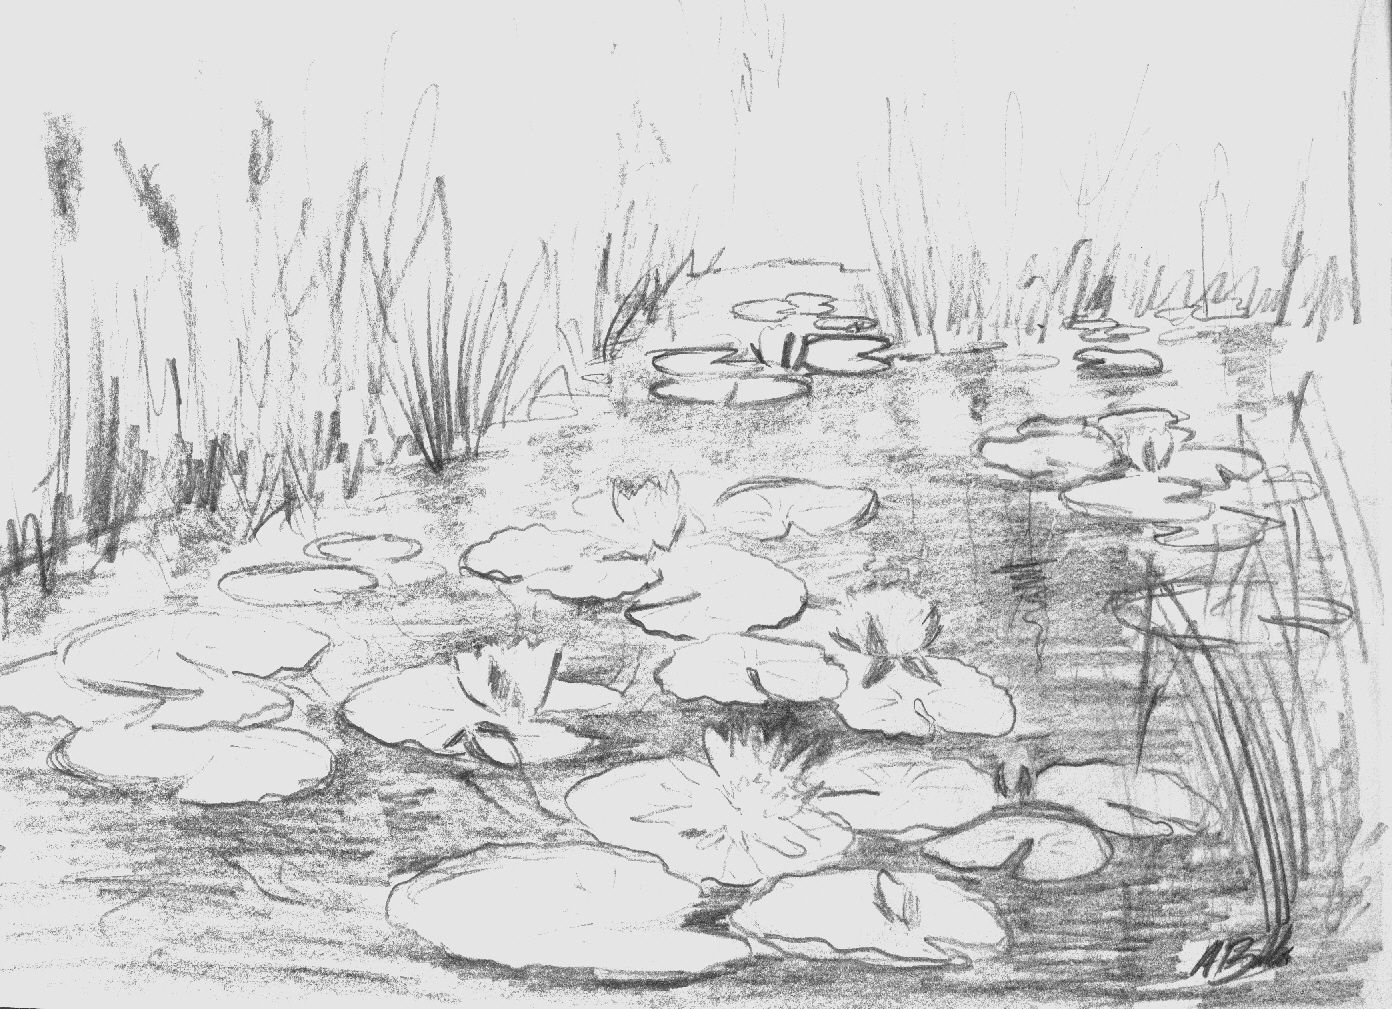 Летний пруд с лягушками, рыбой и цветами - рисунок в векторном формате